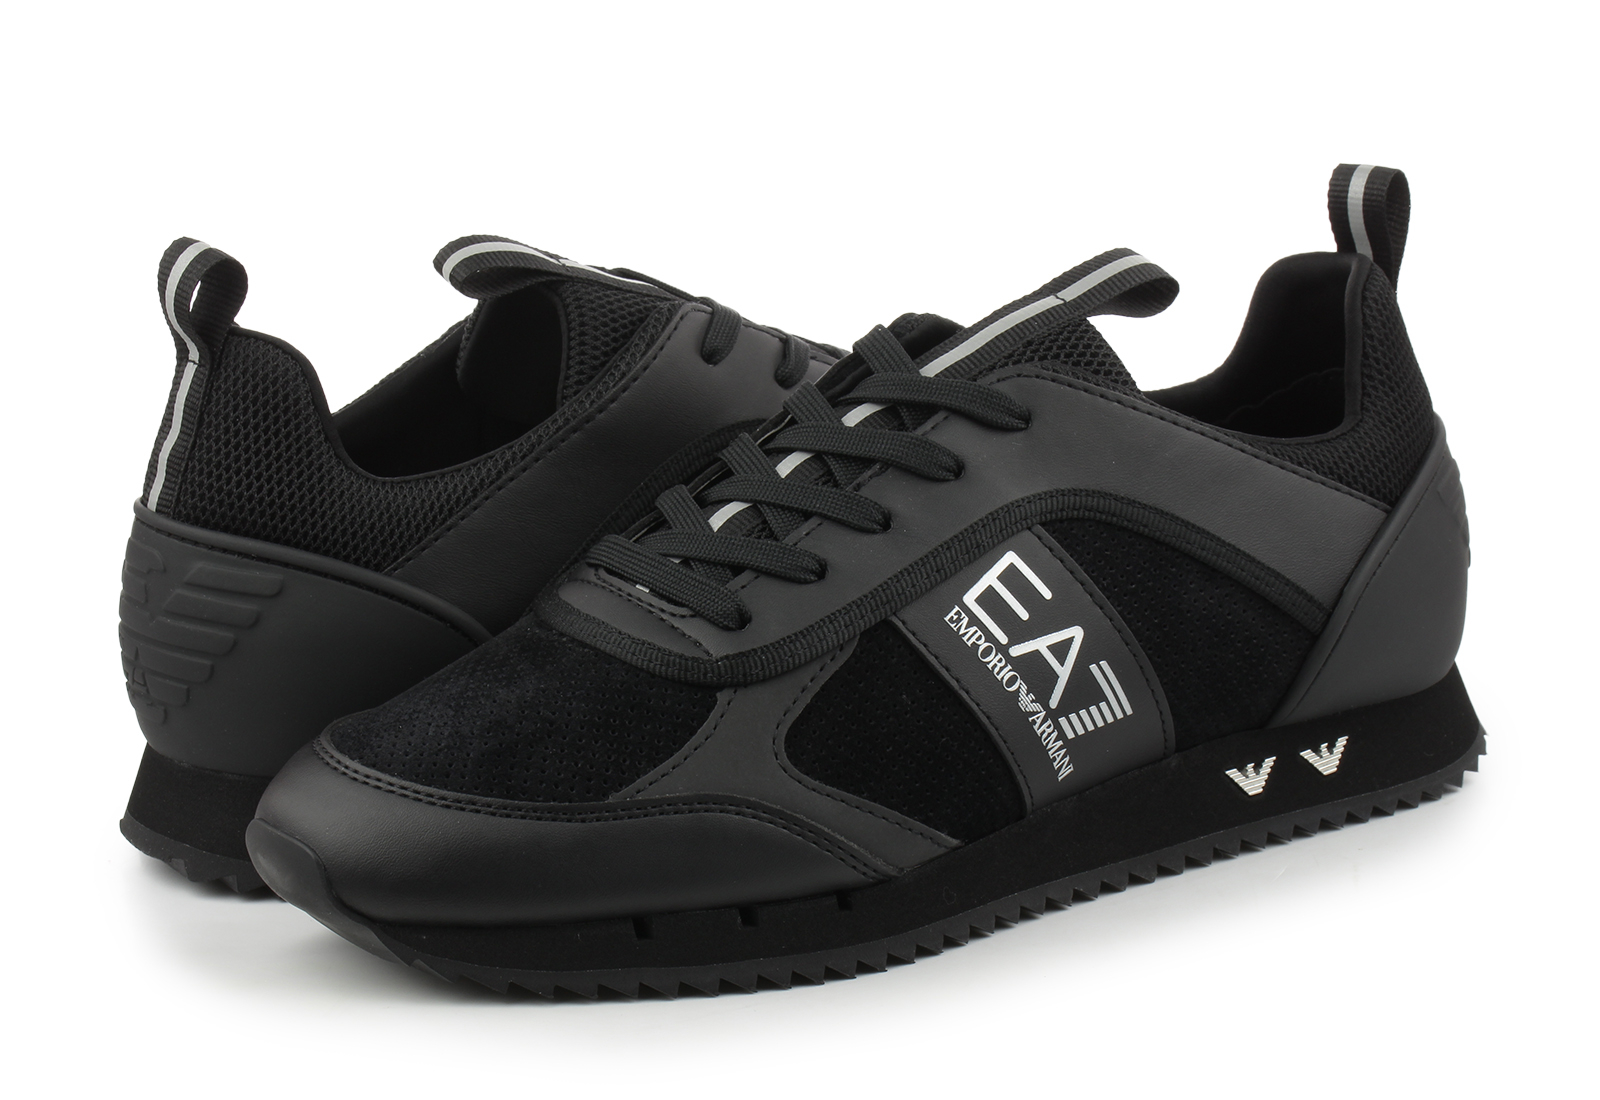 EA7 Emporio Armani Sneakers - Laces - X027-XK347-336 - Online shop